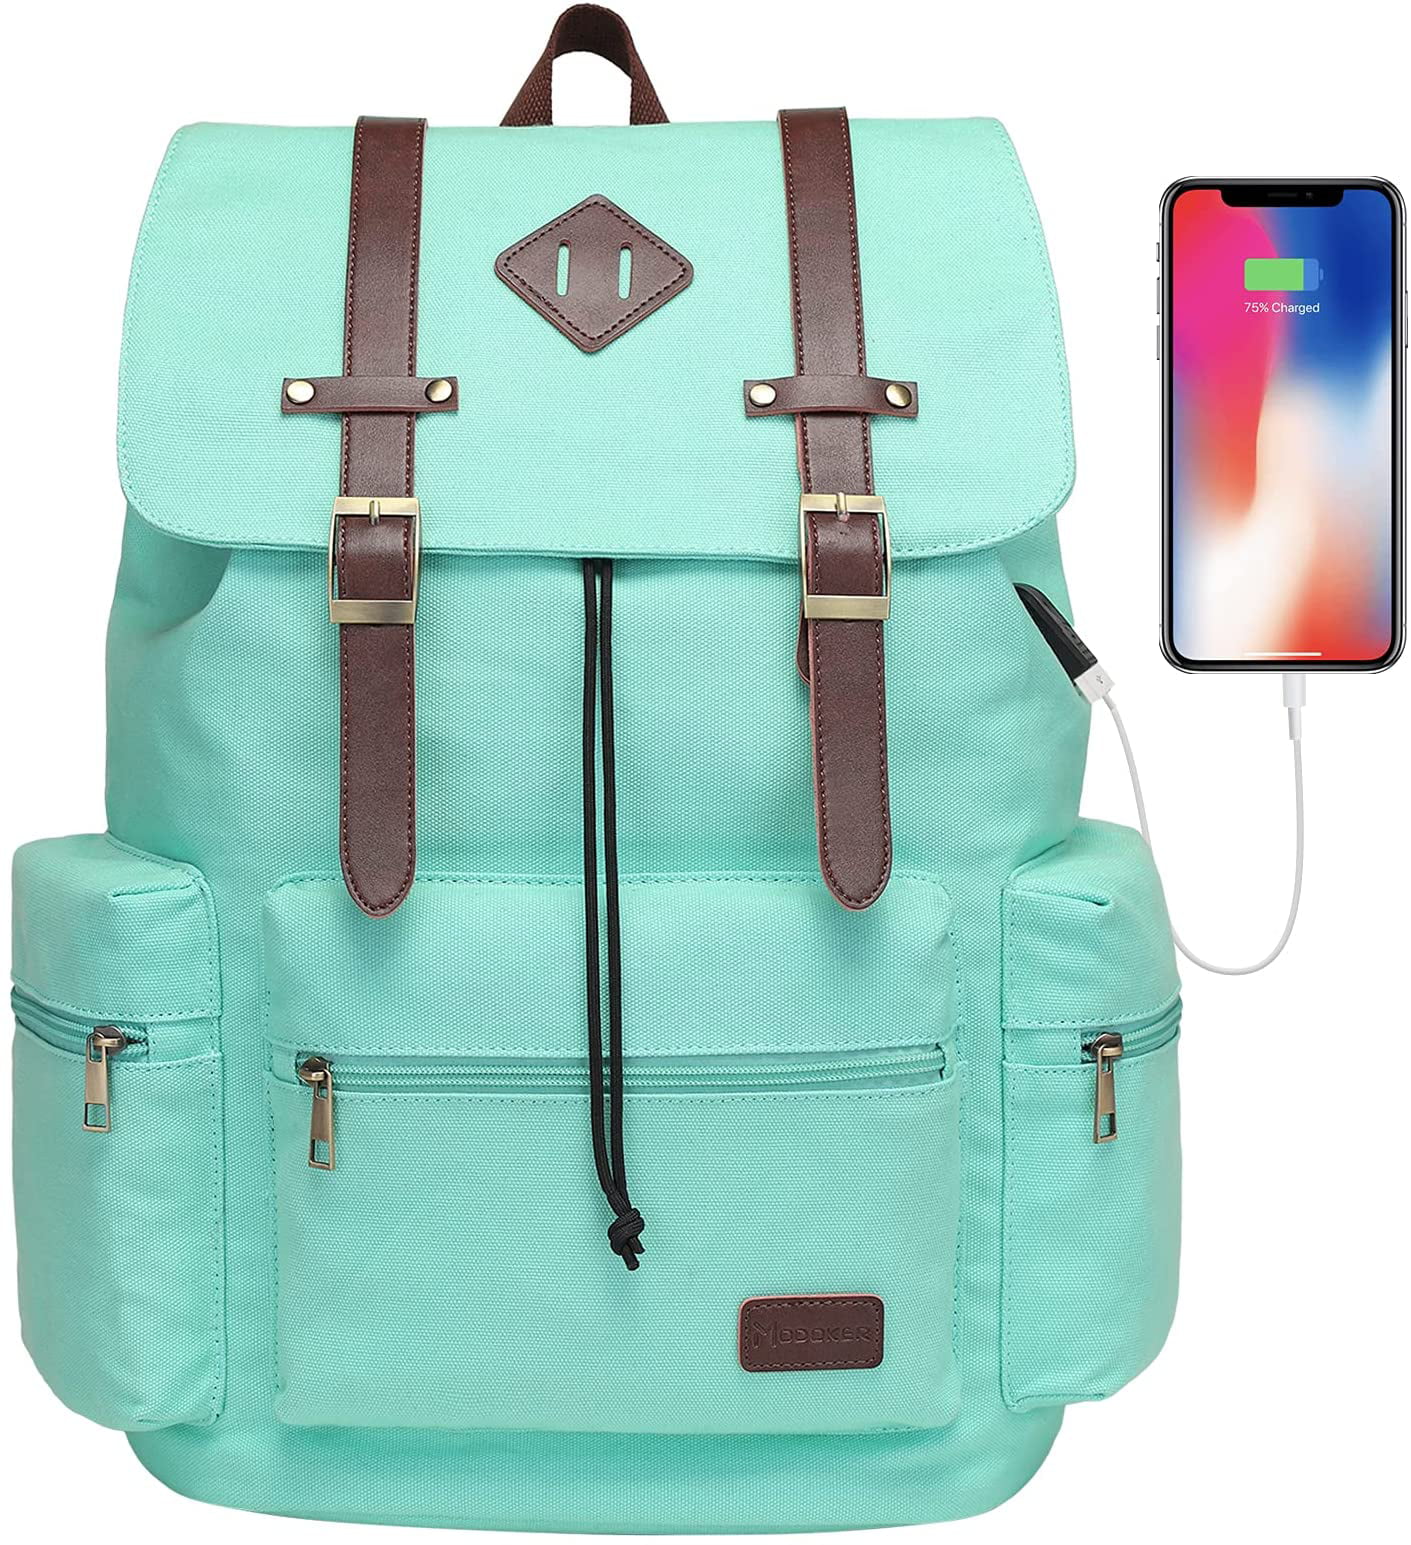 Unisex Backpack Cute Bird Flower Design 17 Inch Laptop Casual Rucksack Waterproof School Backpack Daypacks,Book Bags